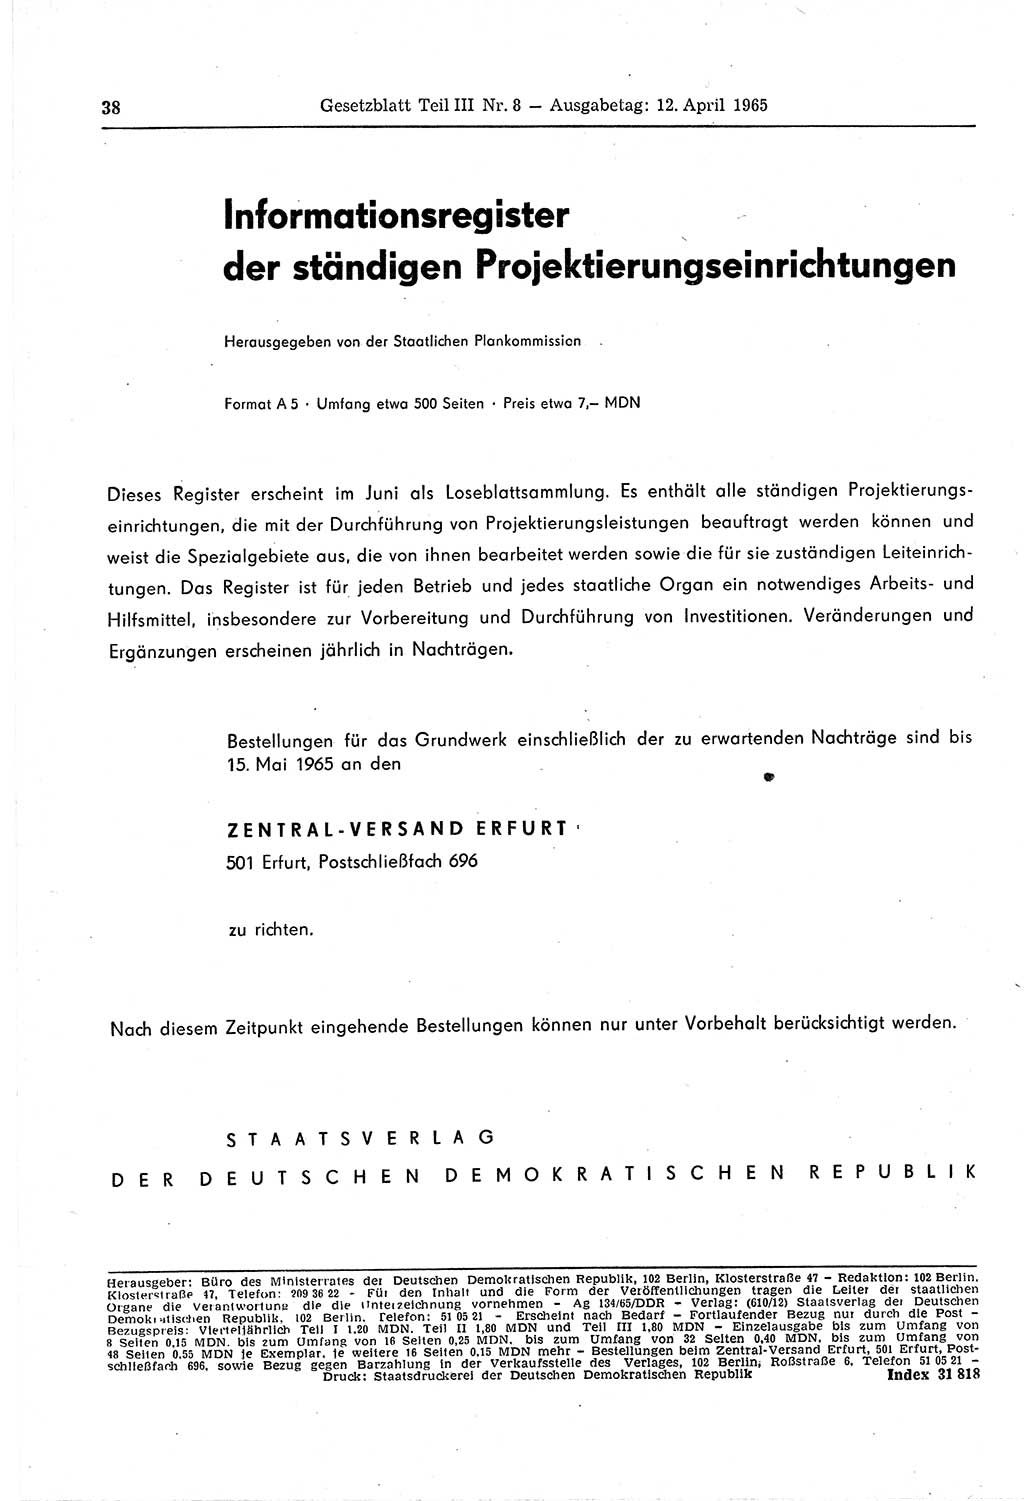 Gesetzblatt (GBl.) der Deutschen Demokratischen Republik (DDR) Teil ⅠⅠⅠ 1965, Seite 38 (GBl. DDR ⅠⅠⅠ 1965, S. 38)